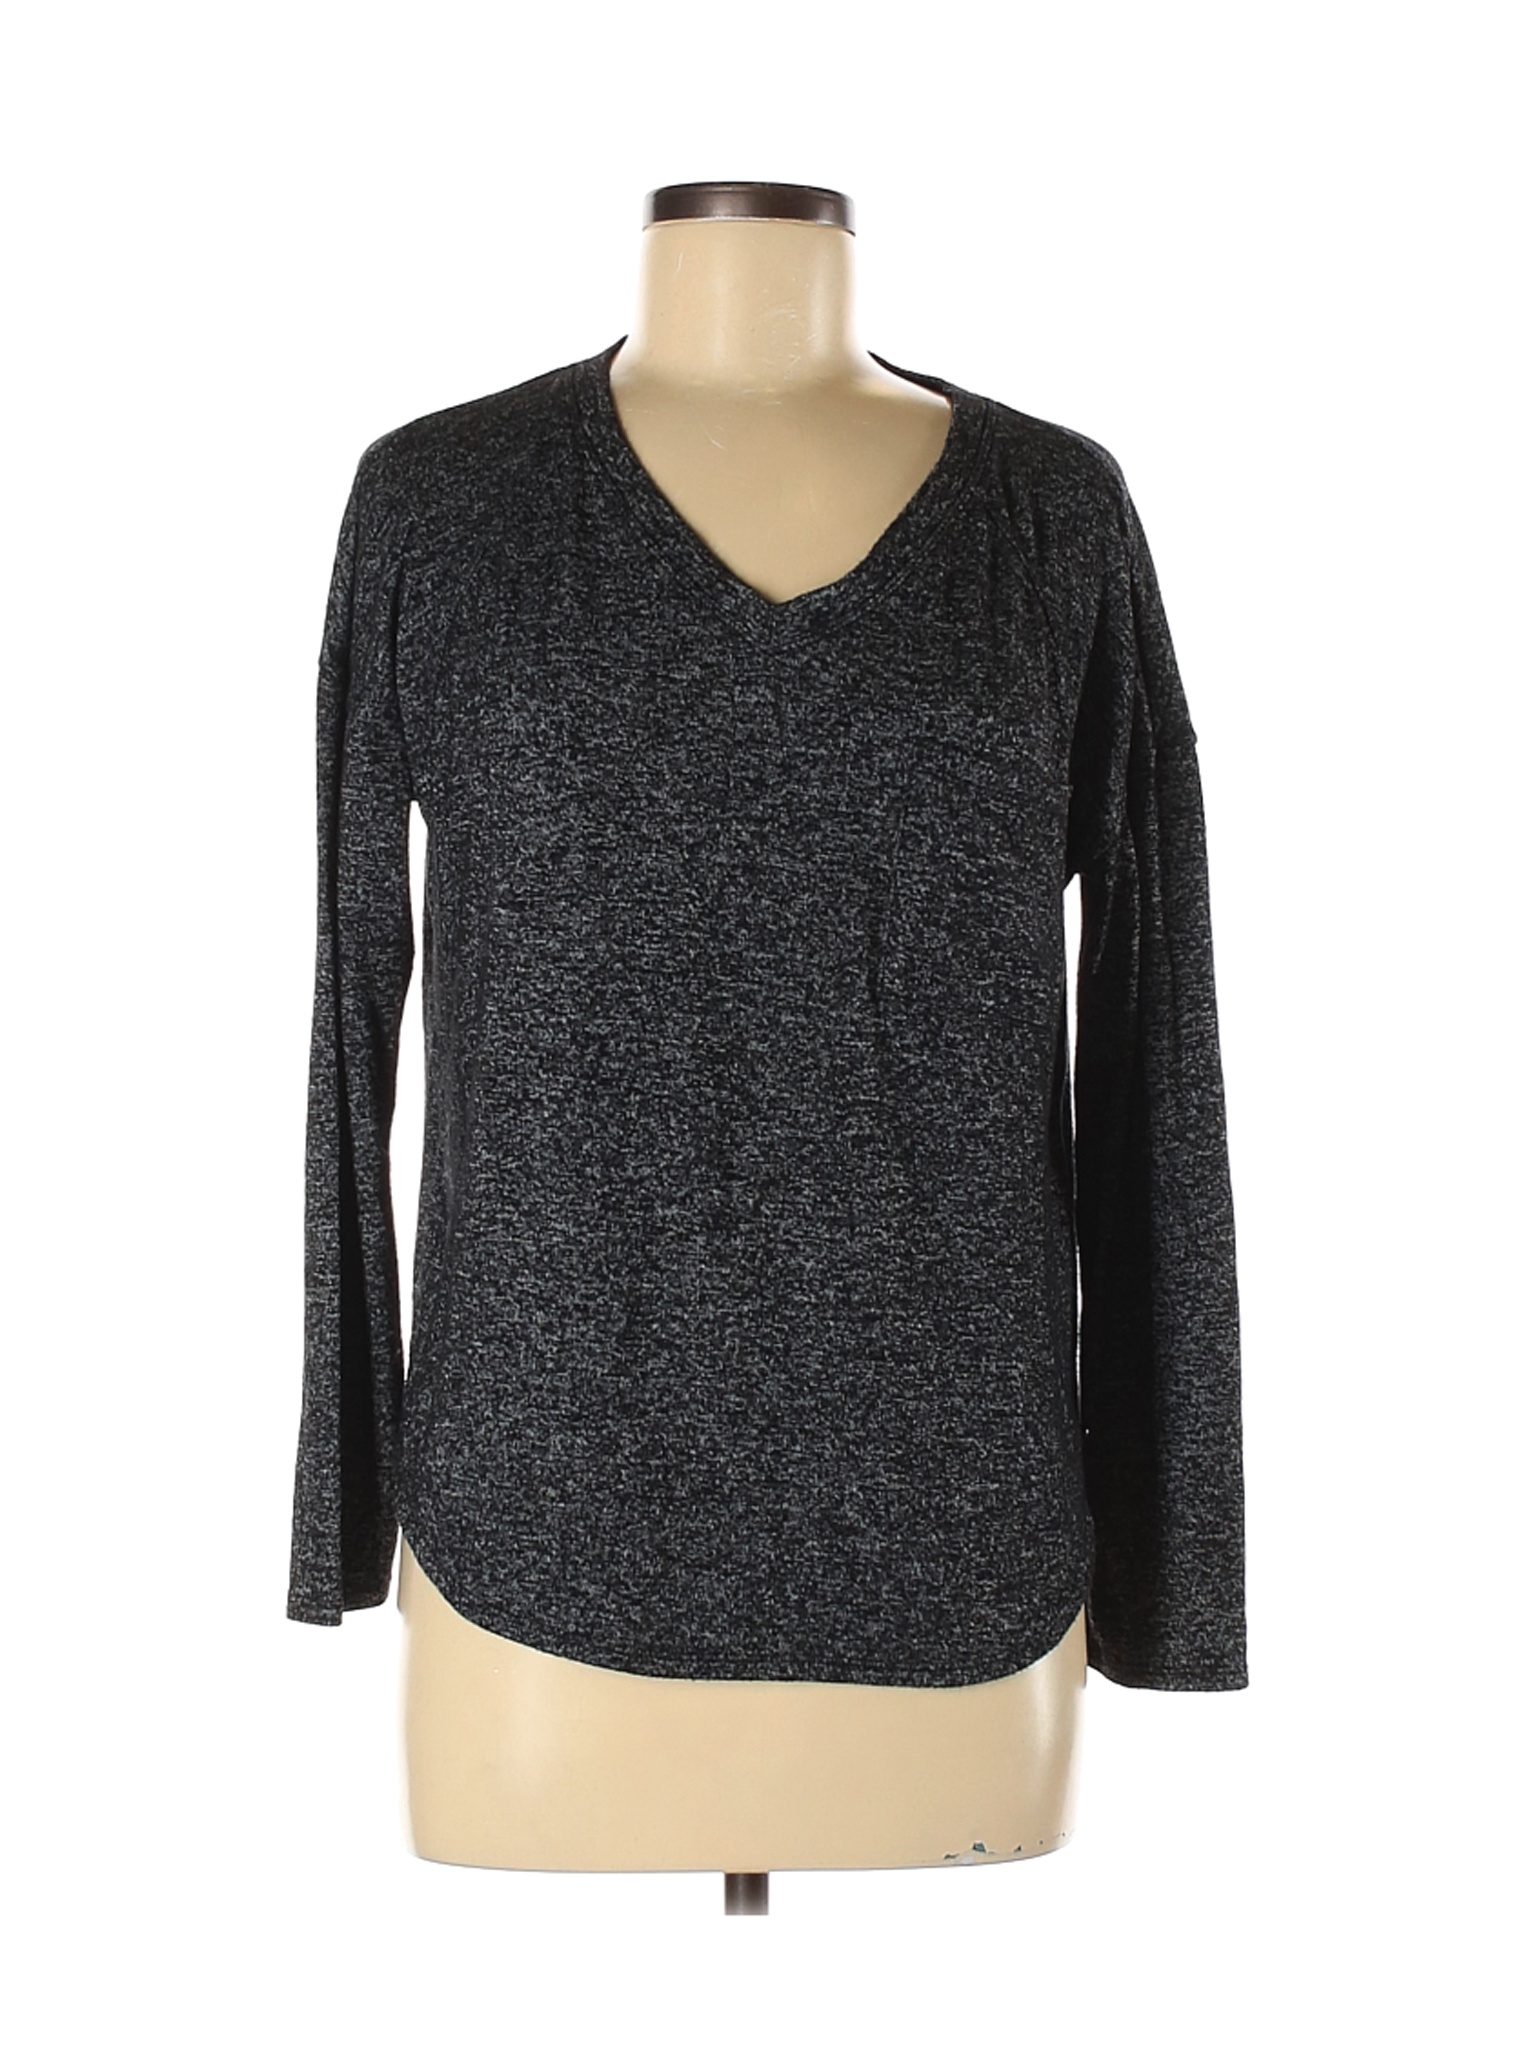 Calvin Klein Women Black Pullover Sweater S | eBay